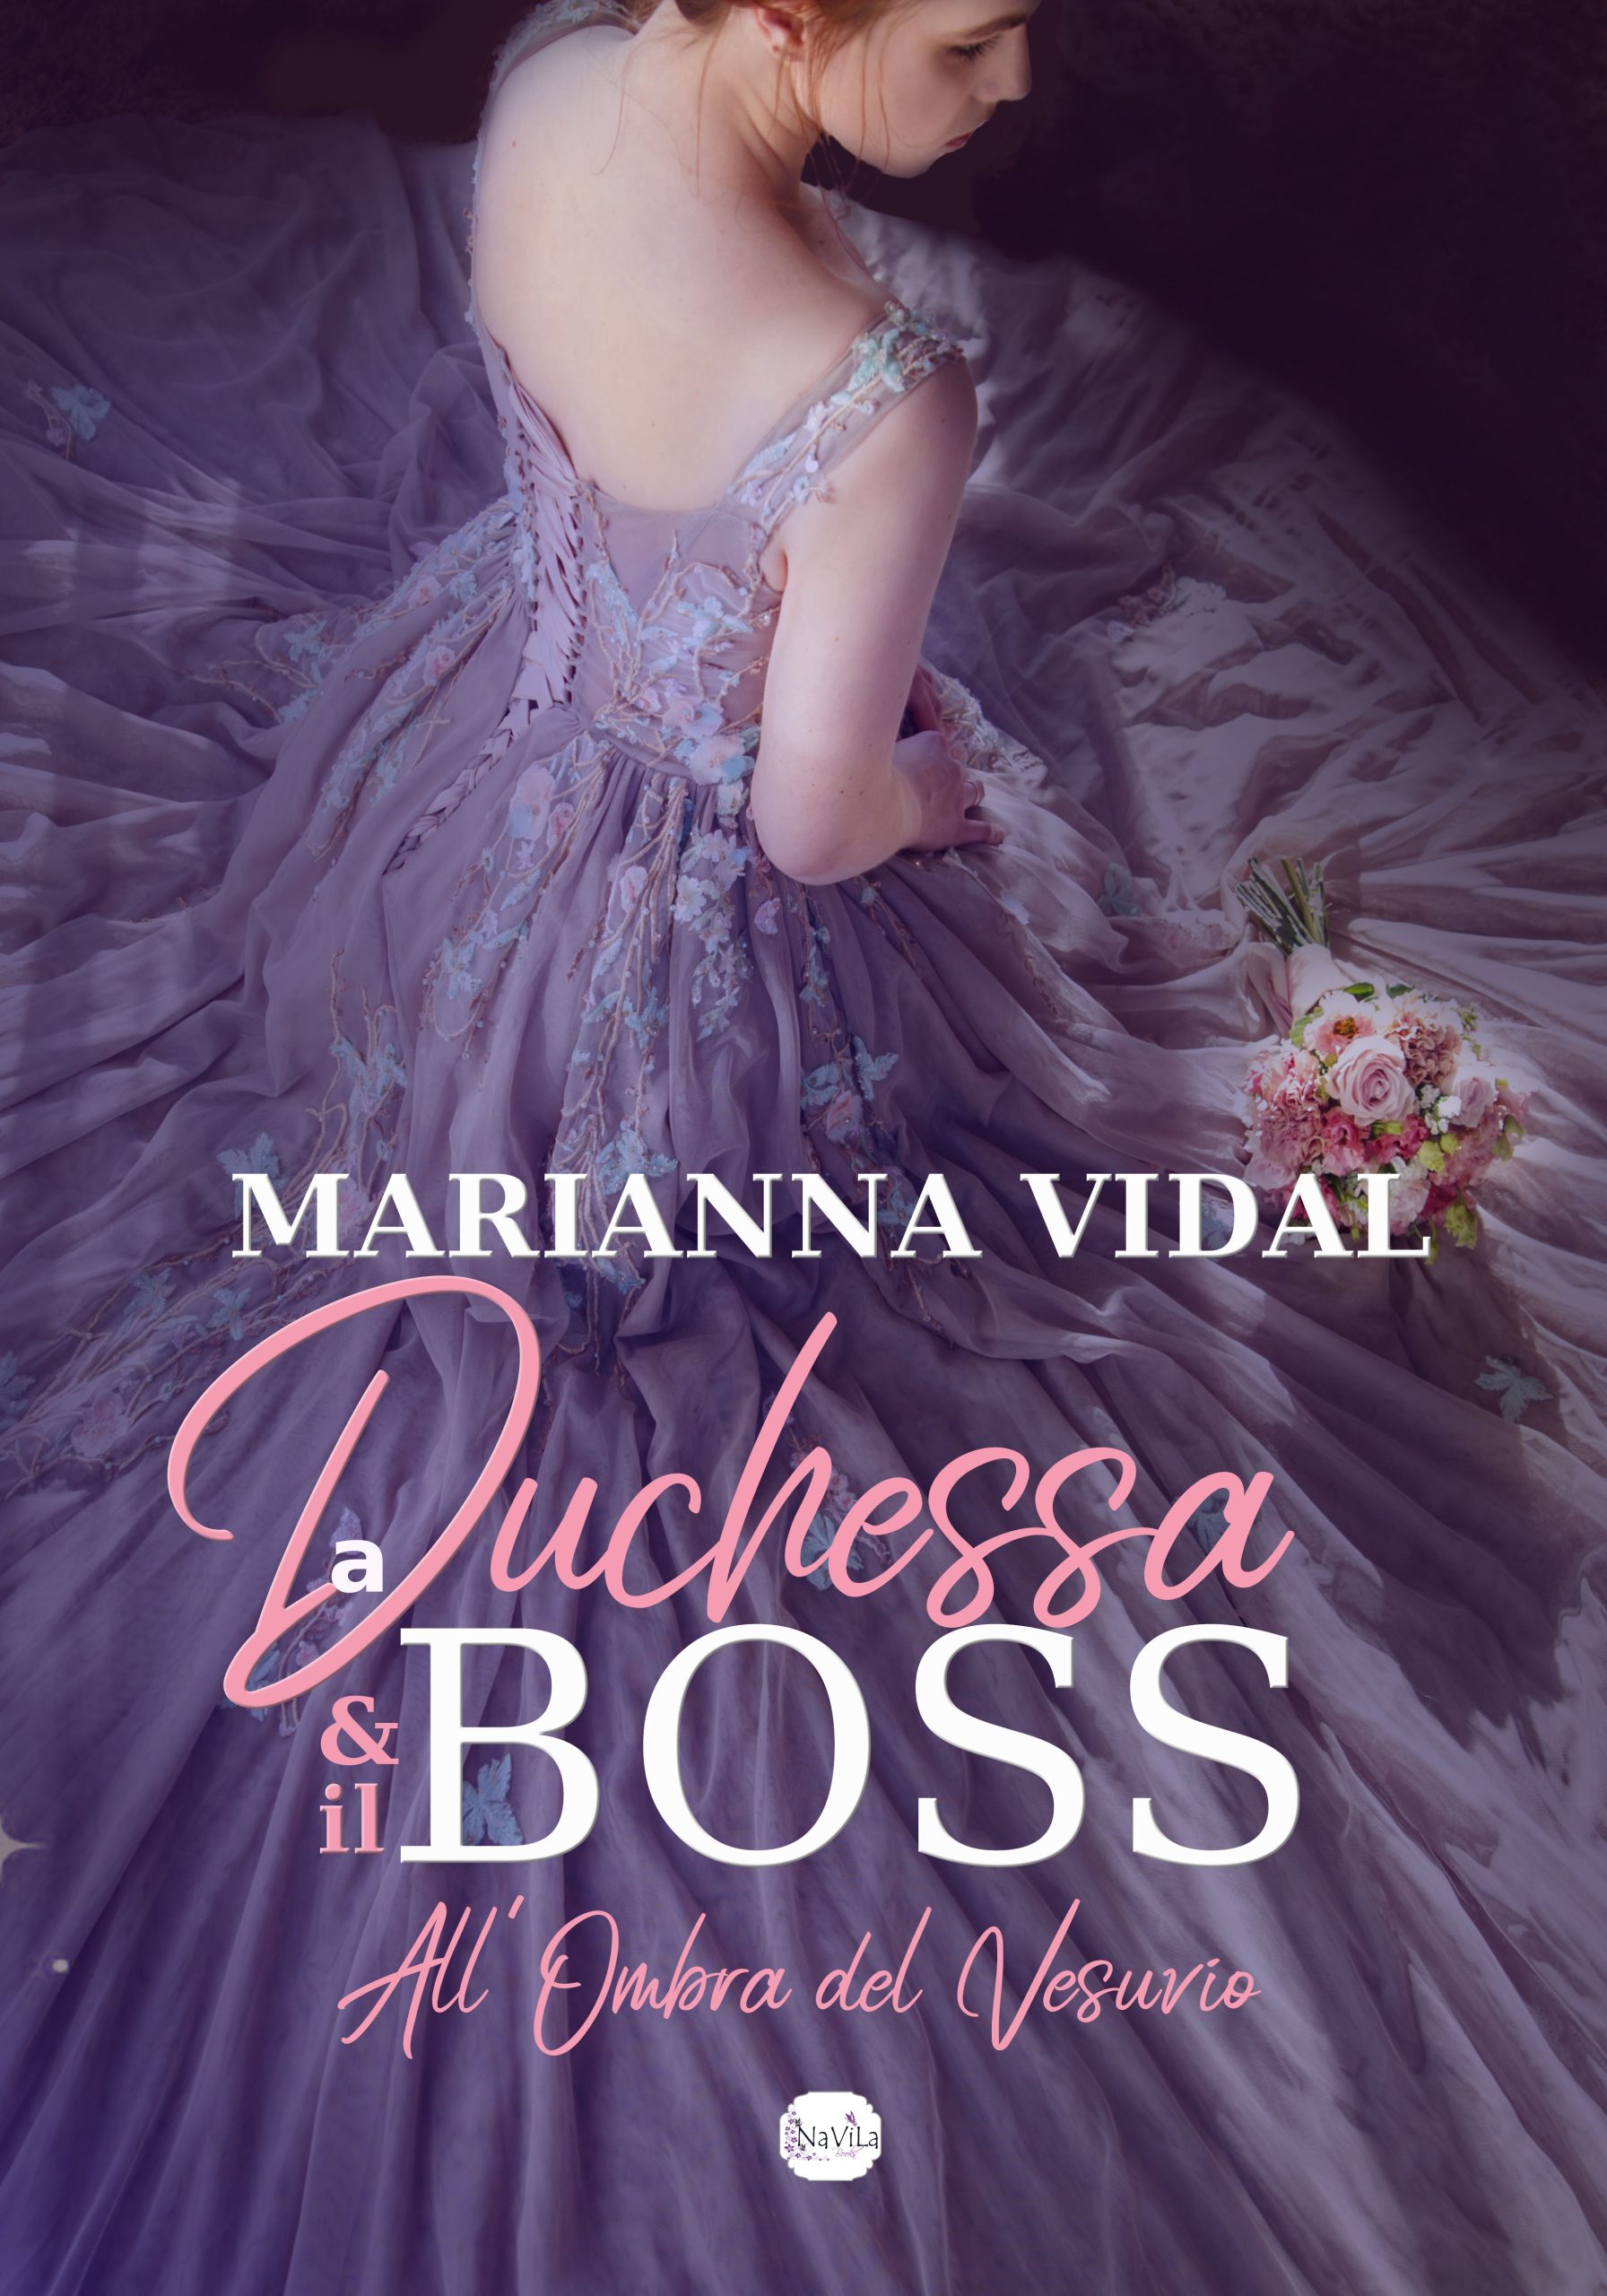 Nuova cover per “La duchessa & il boss. All’ombra del Vesuvio” di Marianna Vidal